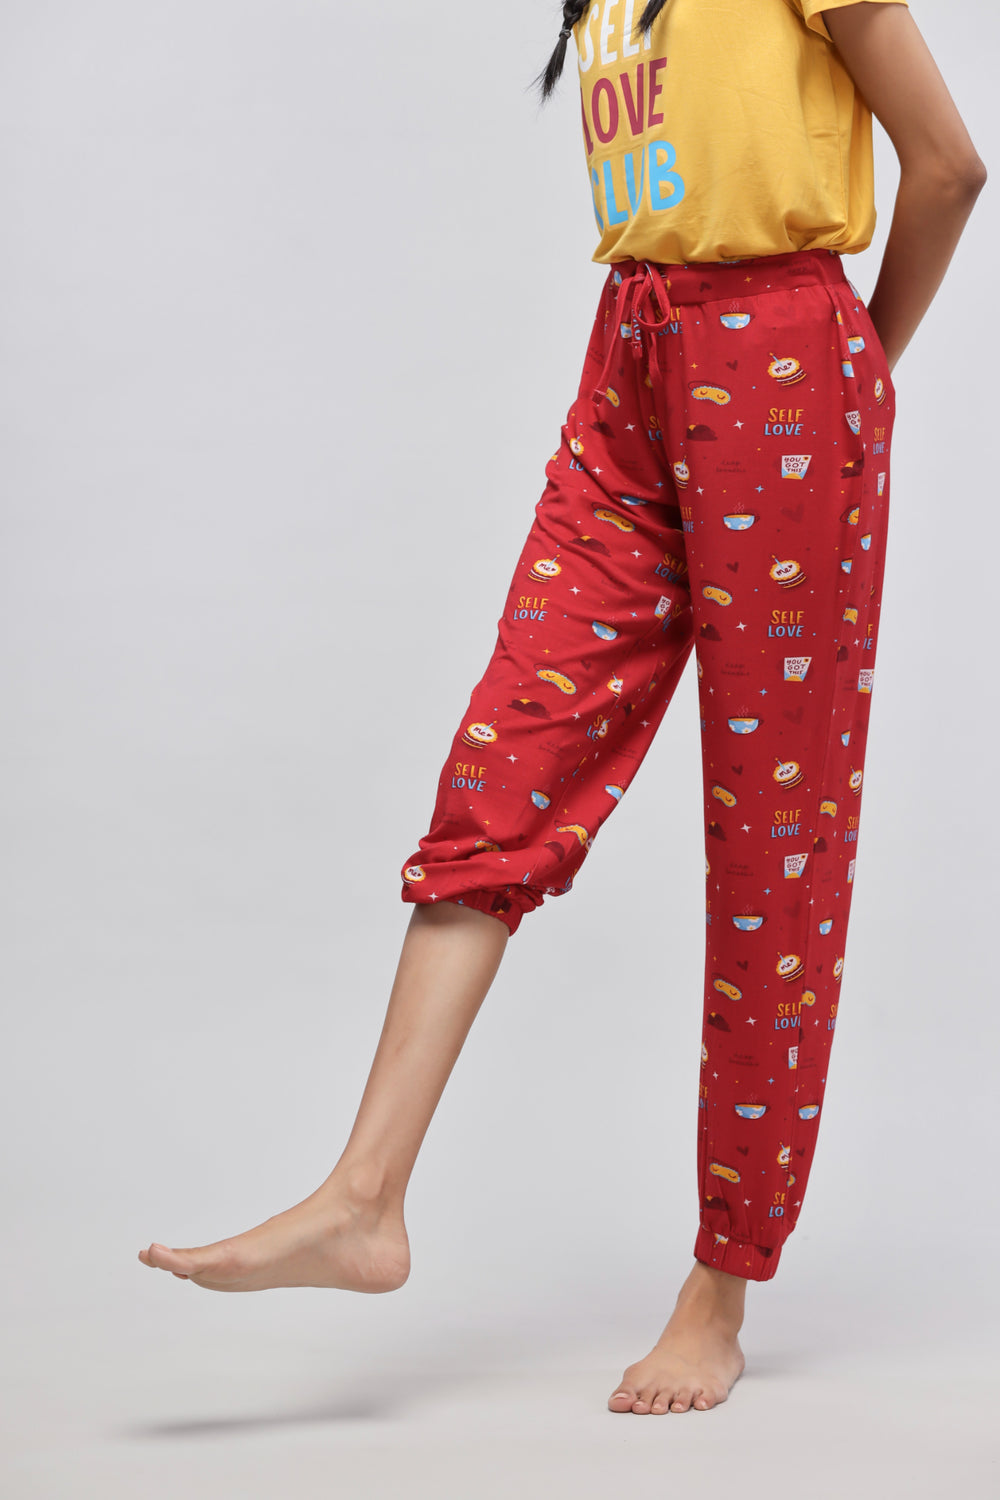 Self Love Cuffed Pajamas